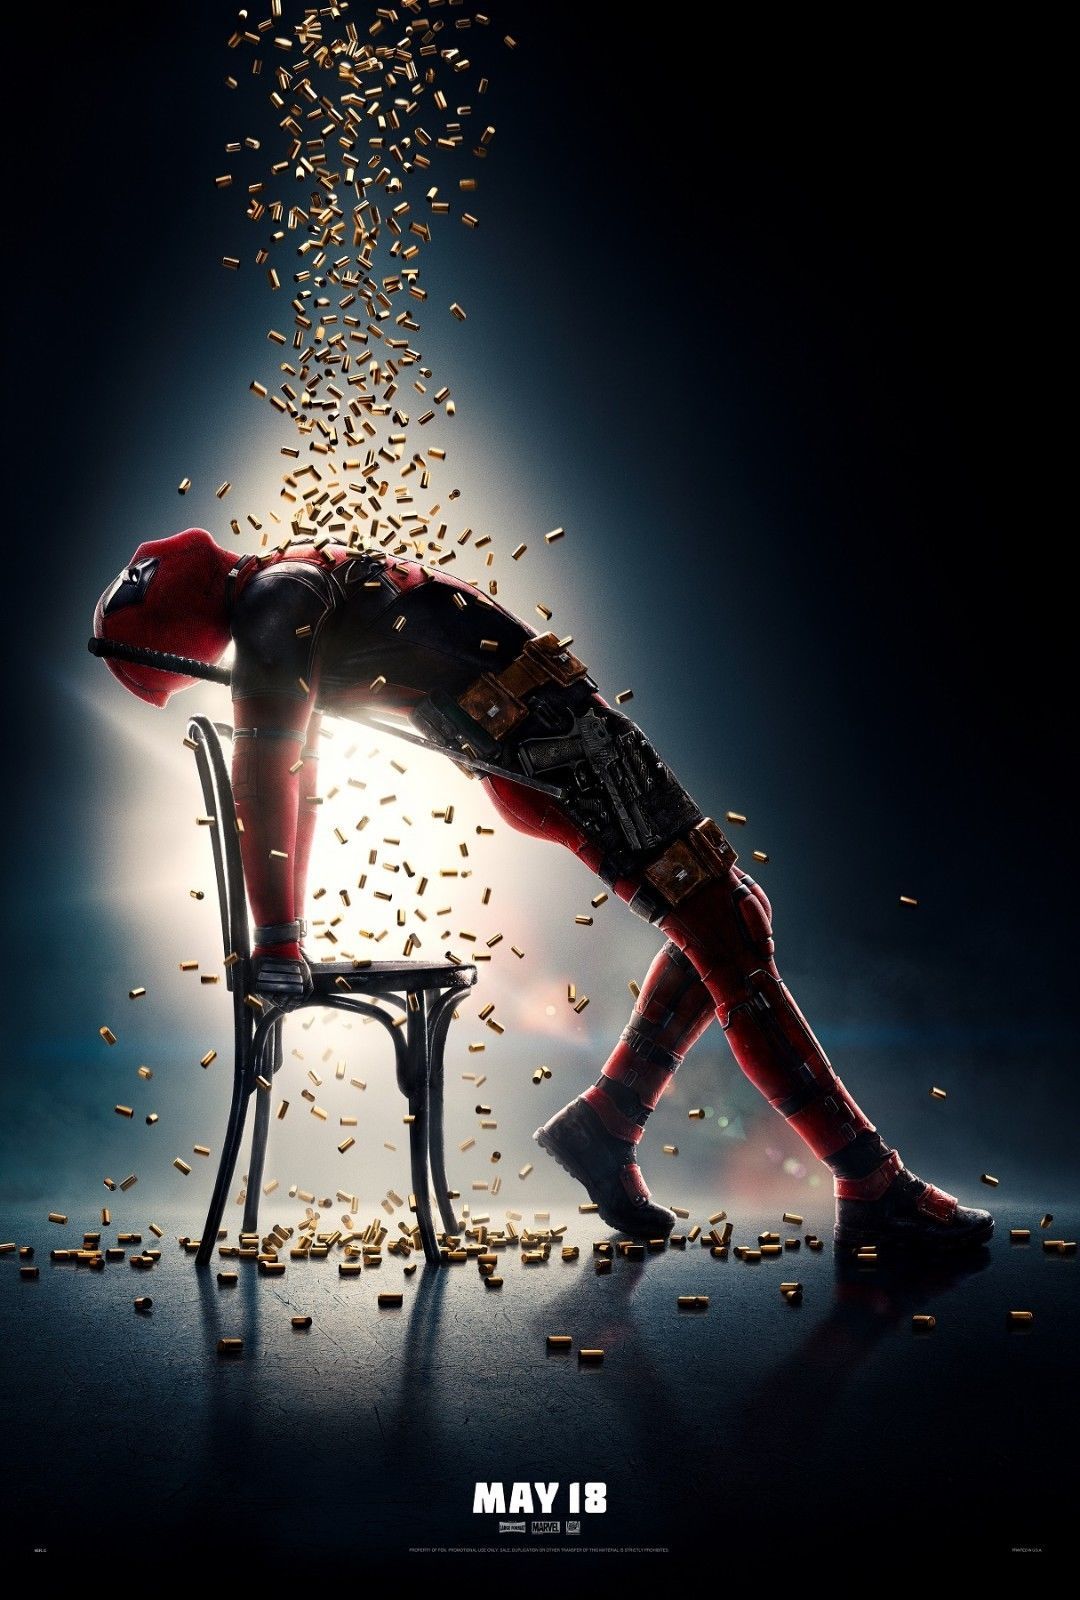 Deadpool 2 Flashdance Poster 2018 Marvel Comics Movie Print 14x21 27x40 32x48